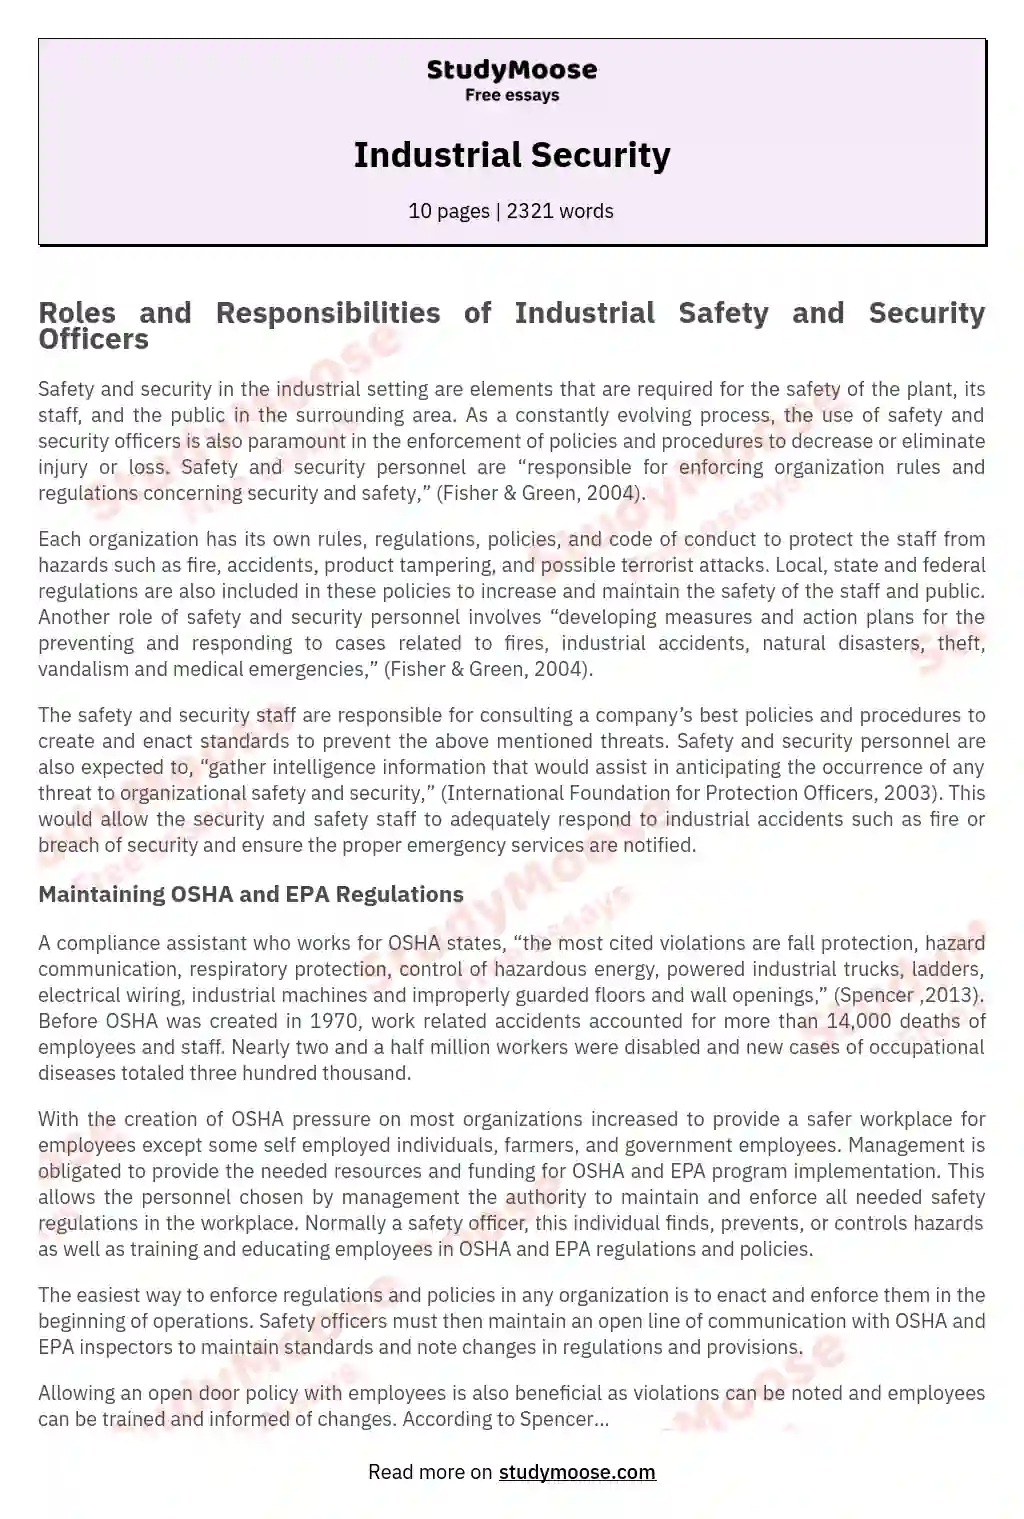 Industrial Security essay